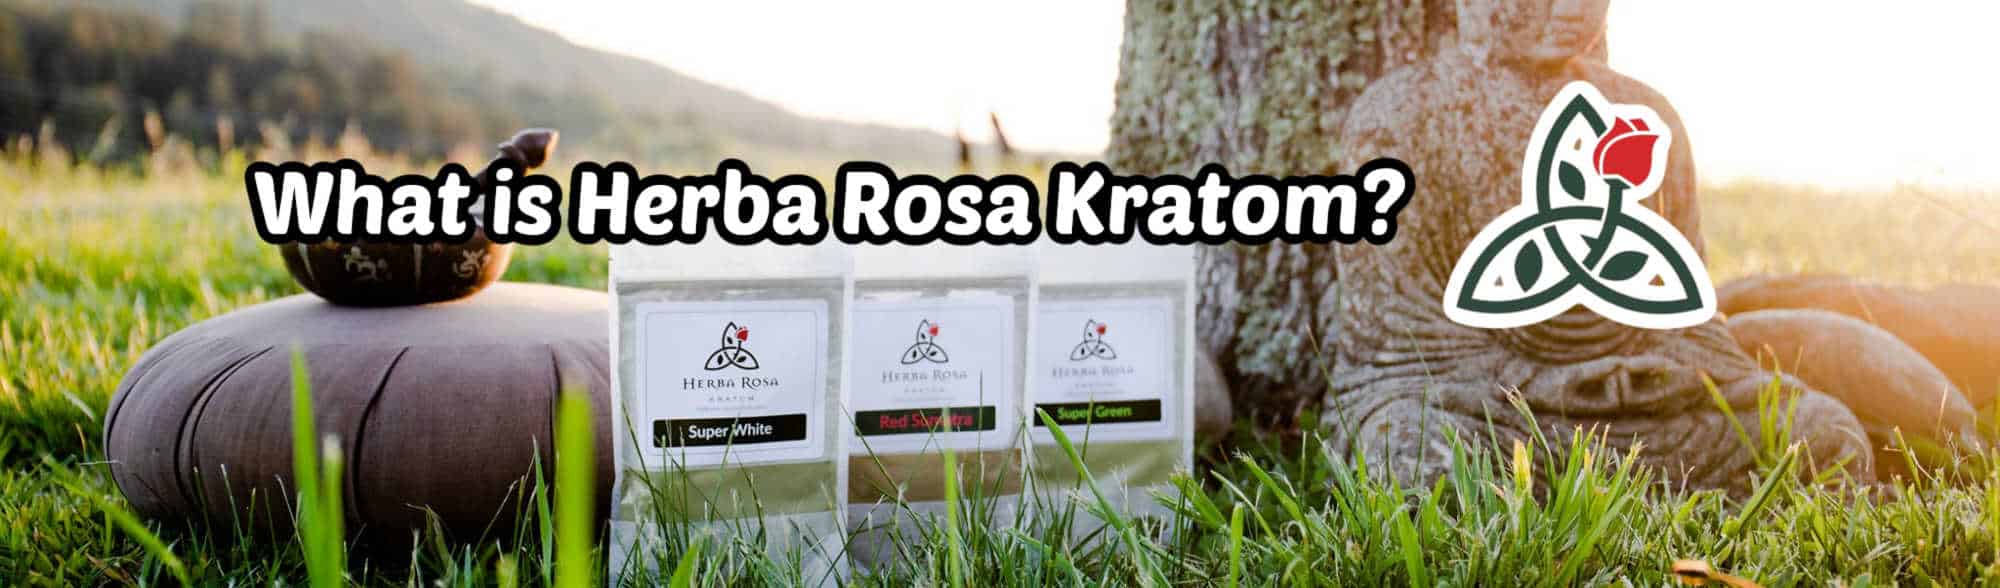 image of what is herba rosa kratom